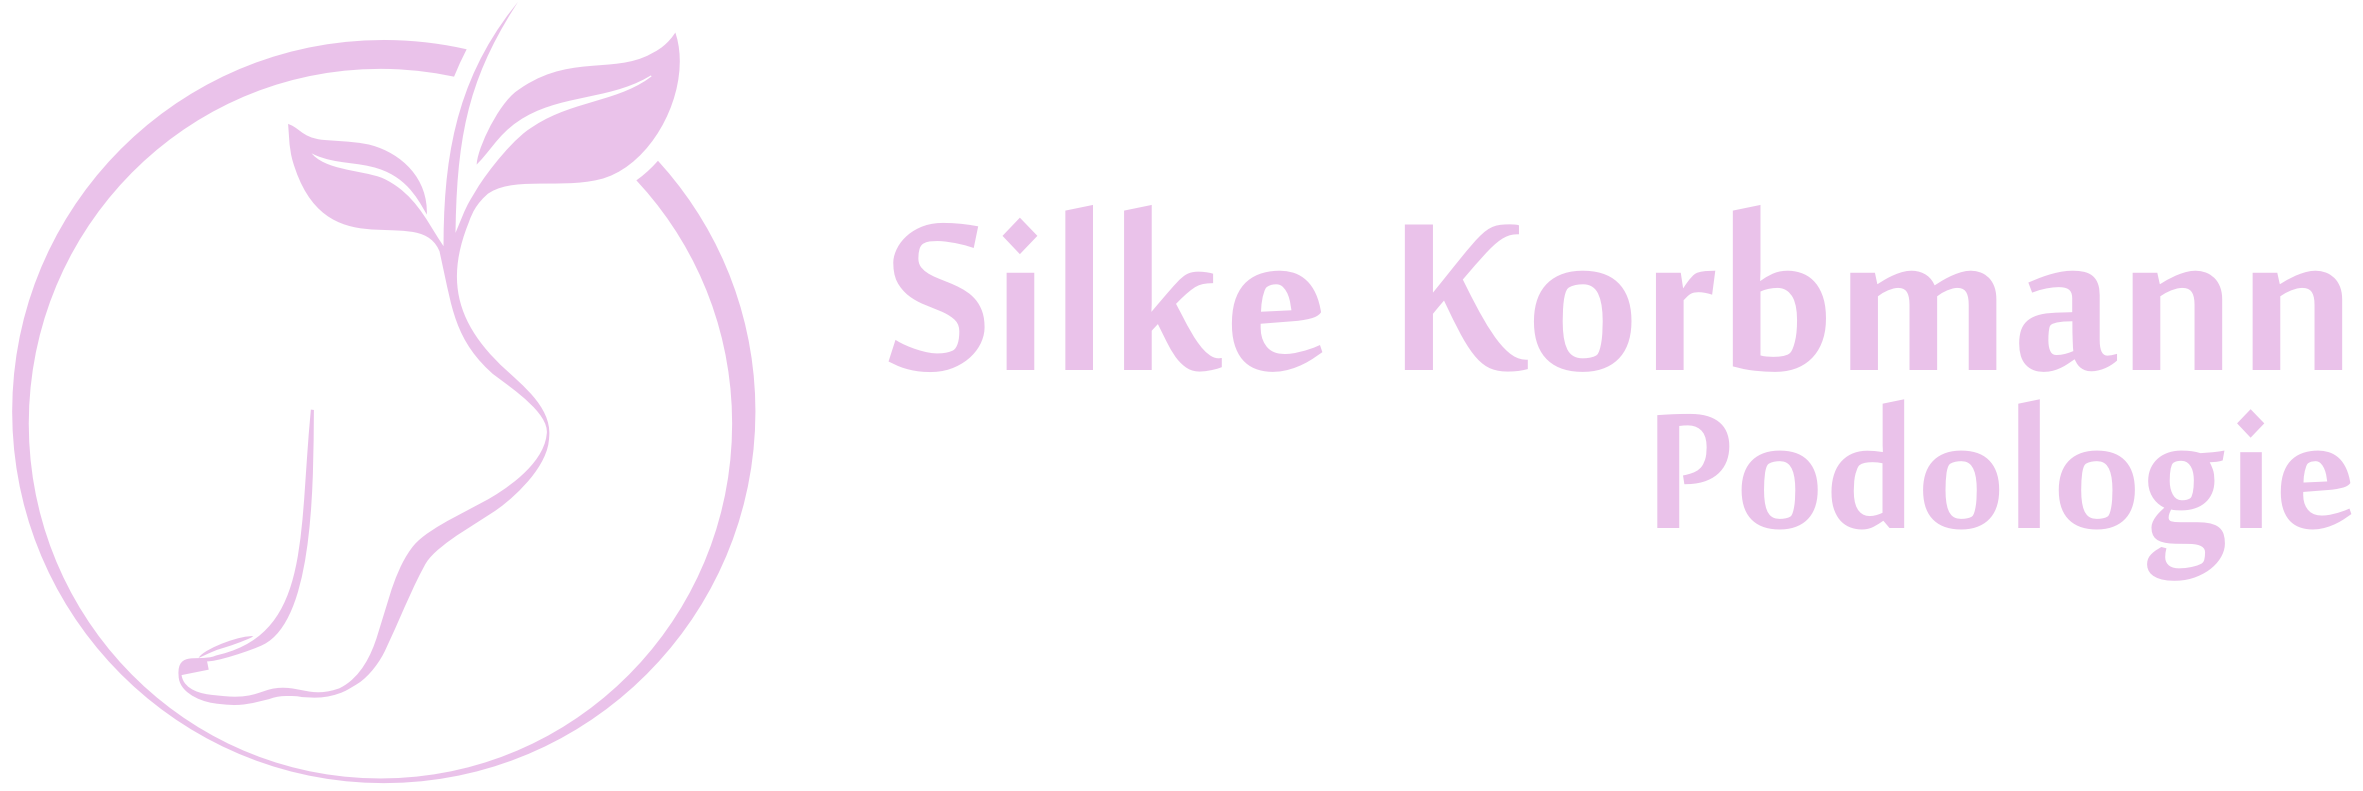 Silke Korbmann Podologie